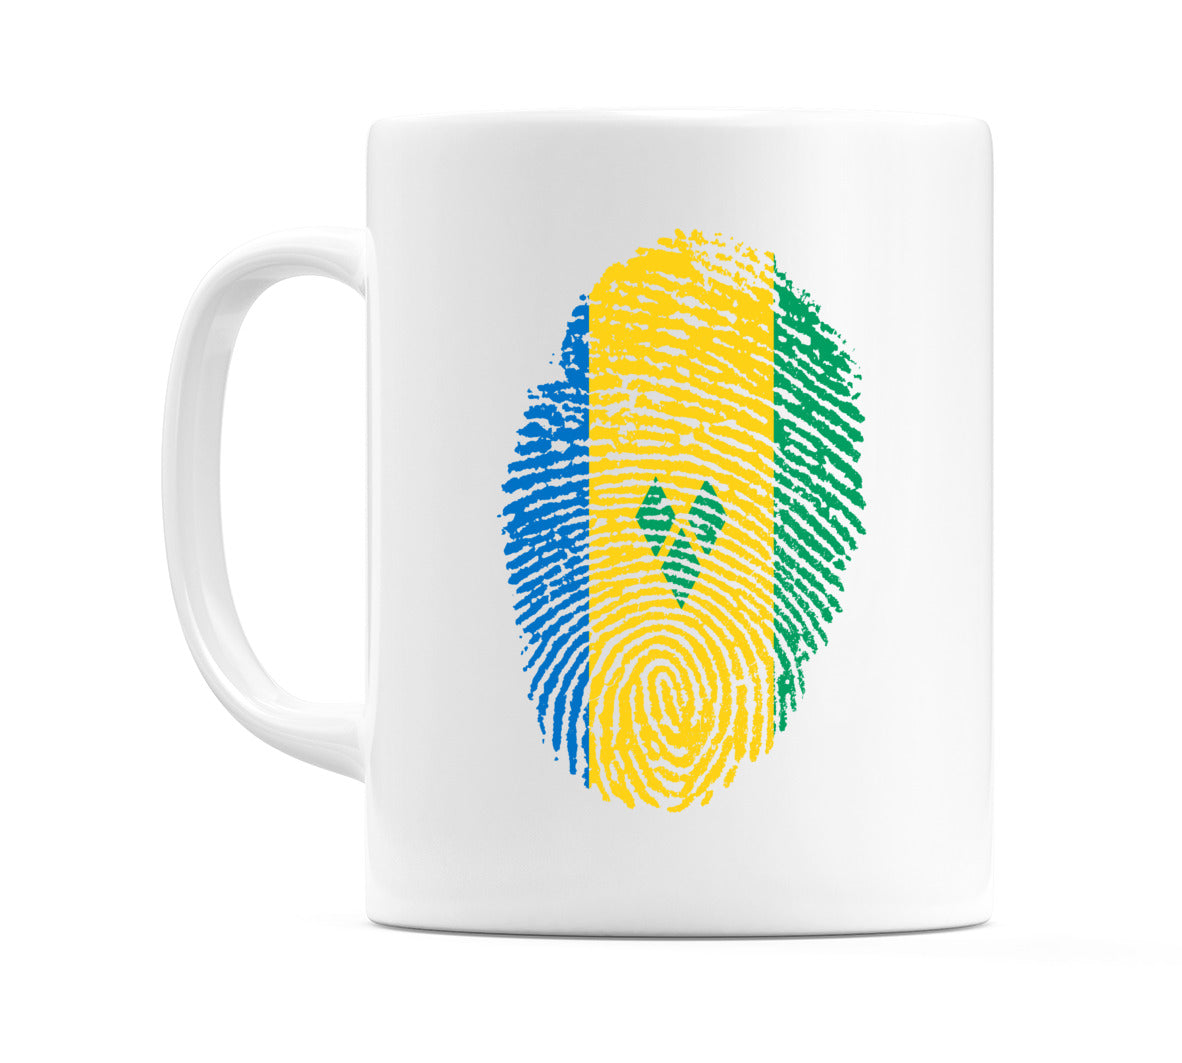 Saint Vincent and the Grenadines Finger Print Flag Mug